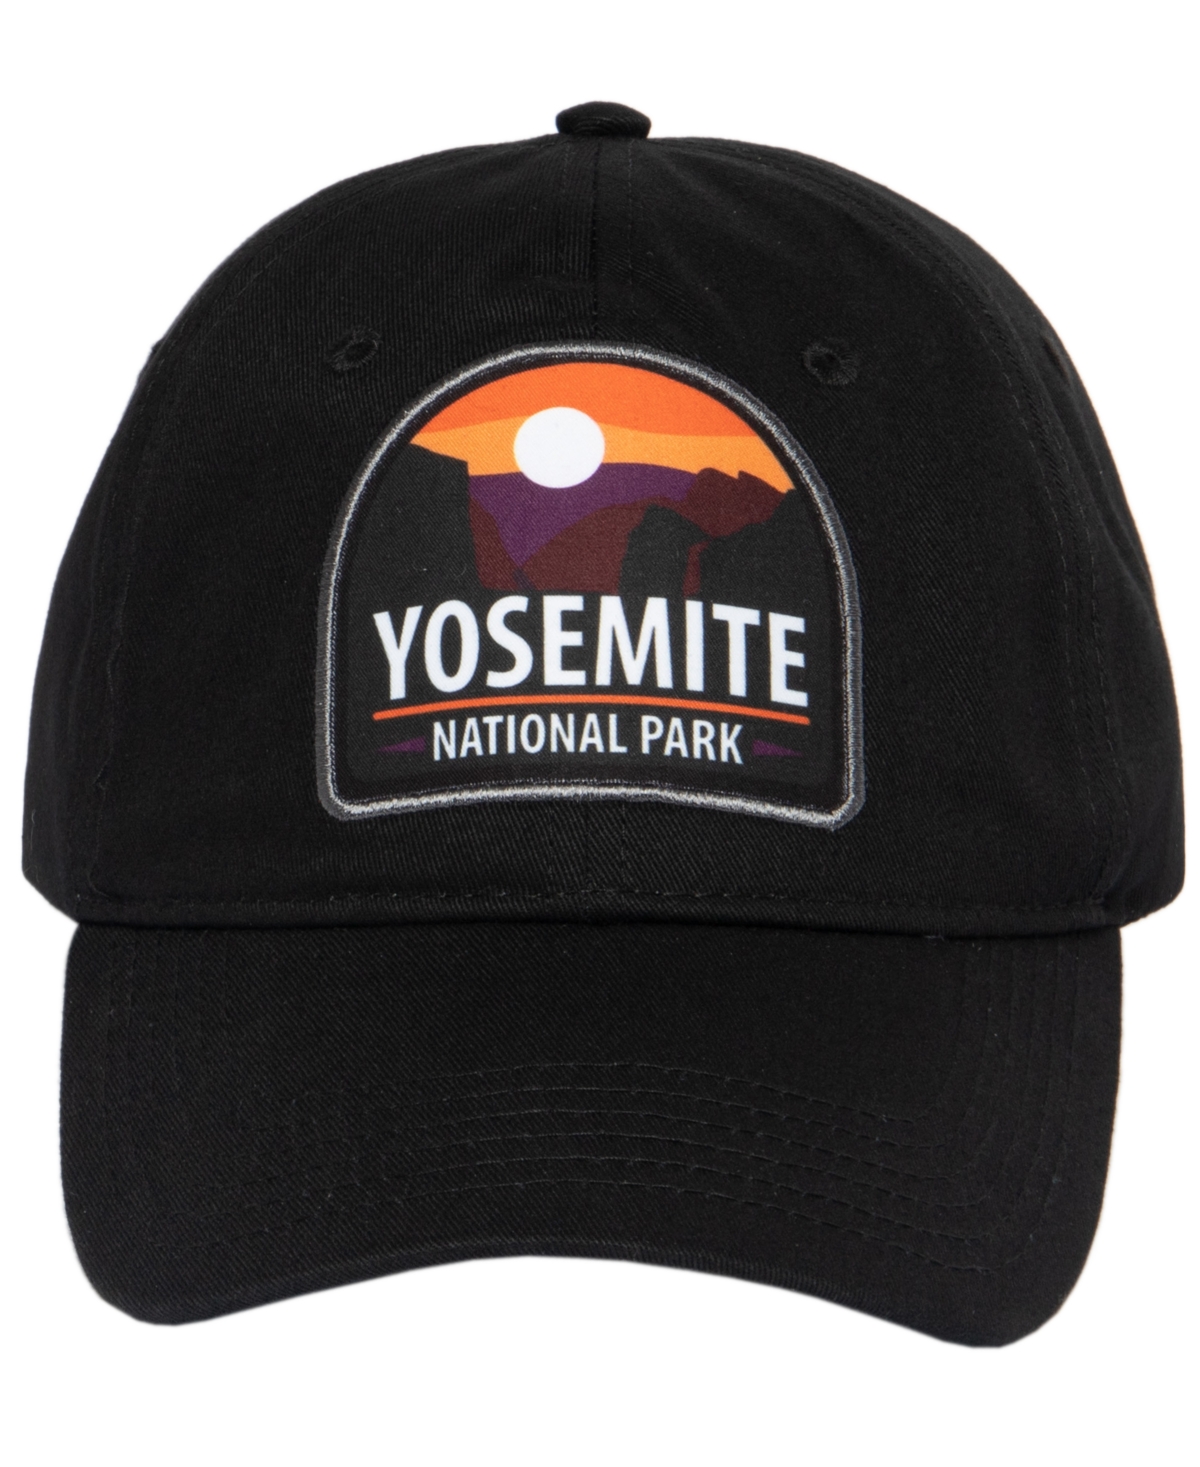 Men's Low Profile Baseball Adjustable Cap - Yosemite Black